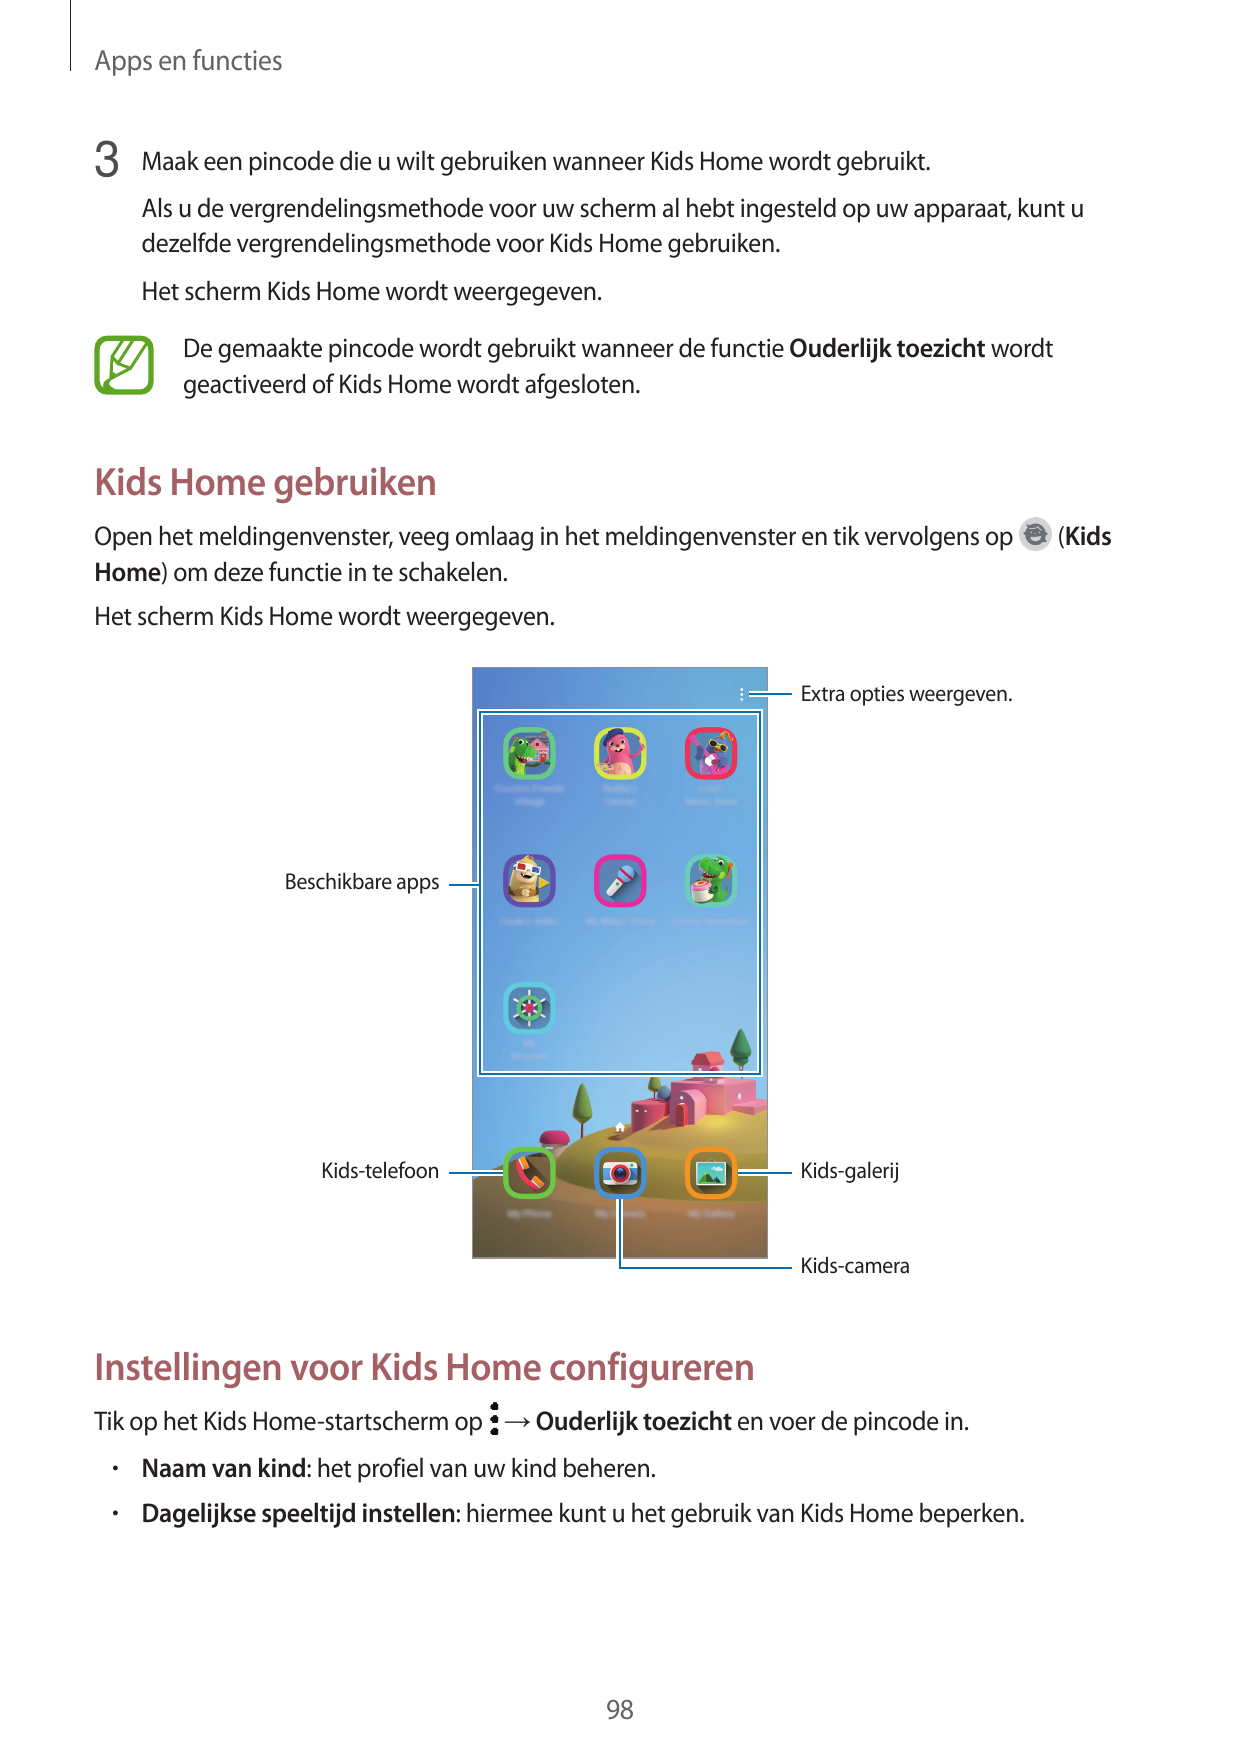 Apps en functies3 Maak een pincode die u wilt gebruiken wanneer Kids Home wordt gebruikt.Als u de vergrendelingsmethode voor uw 